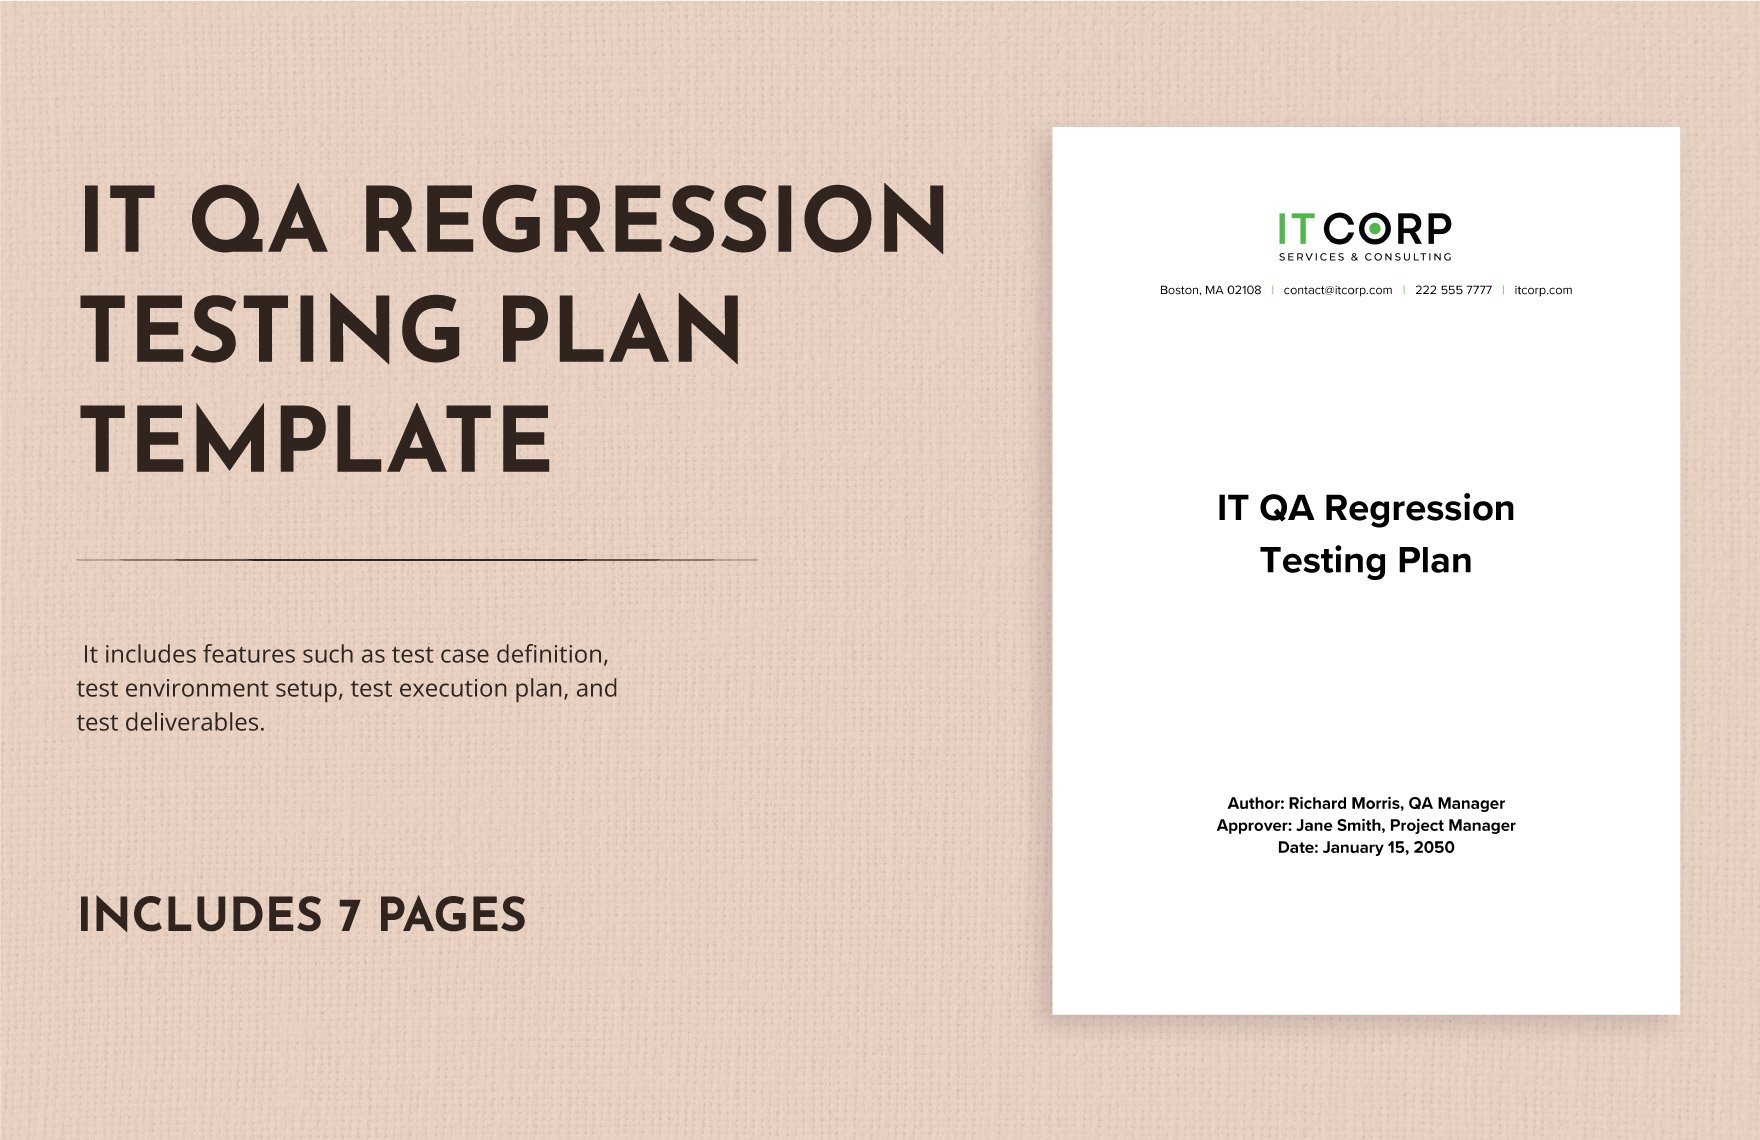 IT QA Regression Testing Plan Template